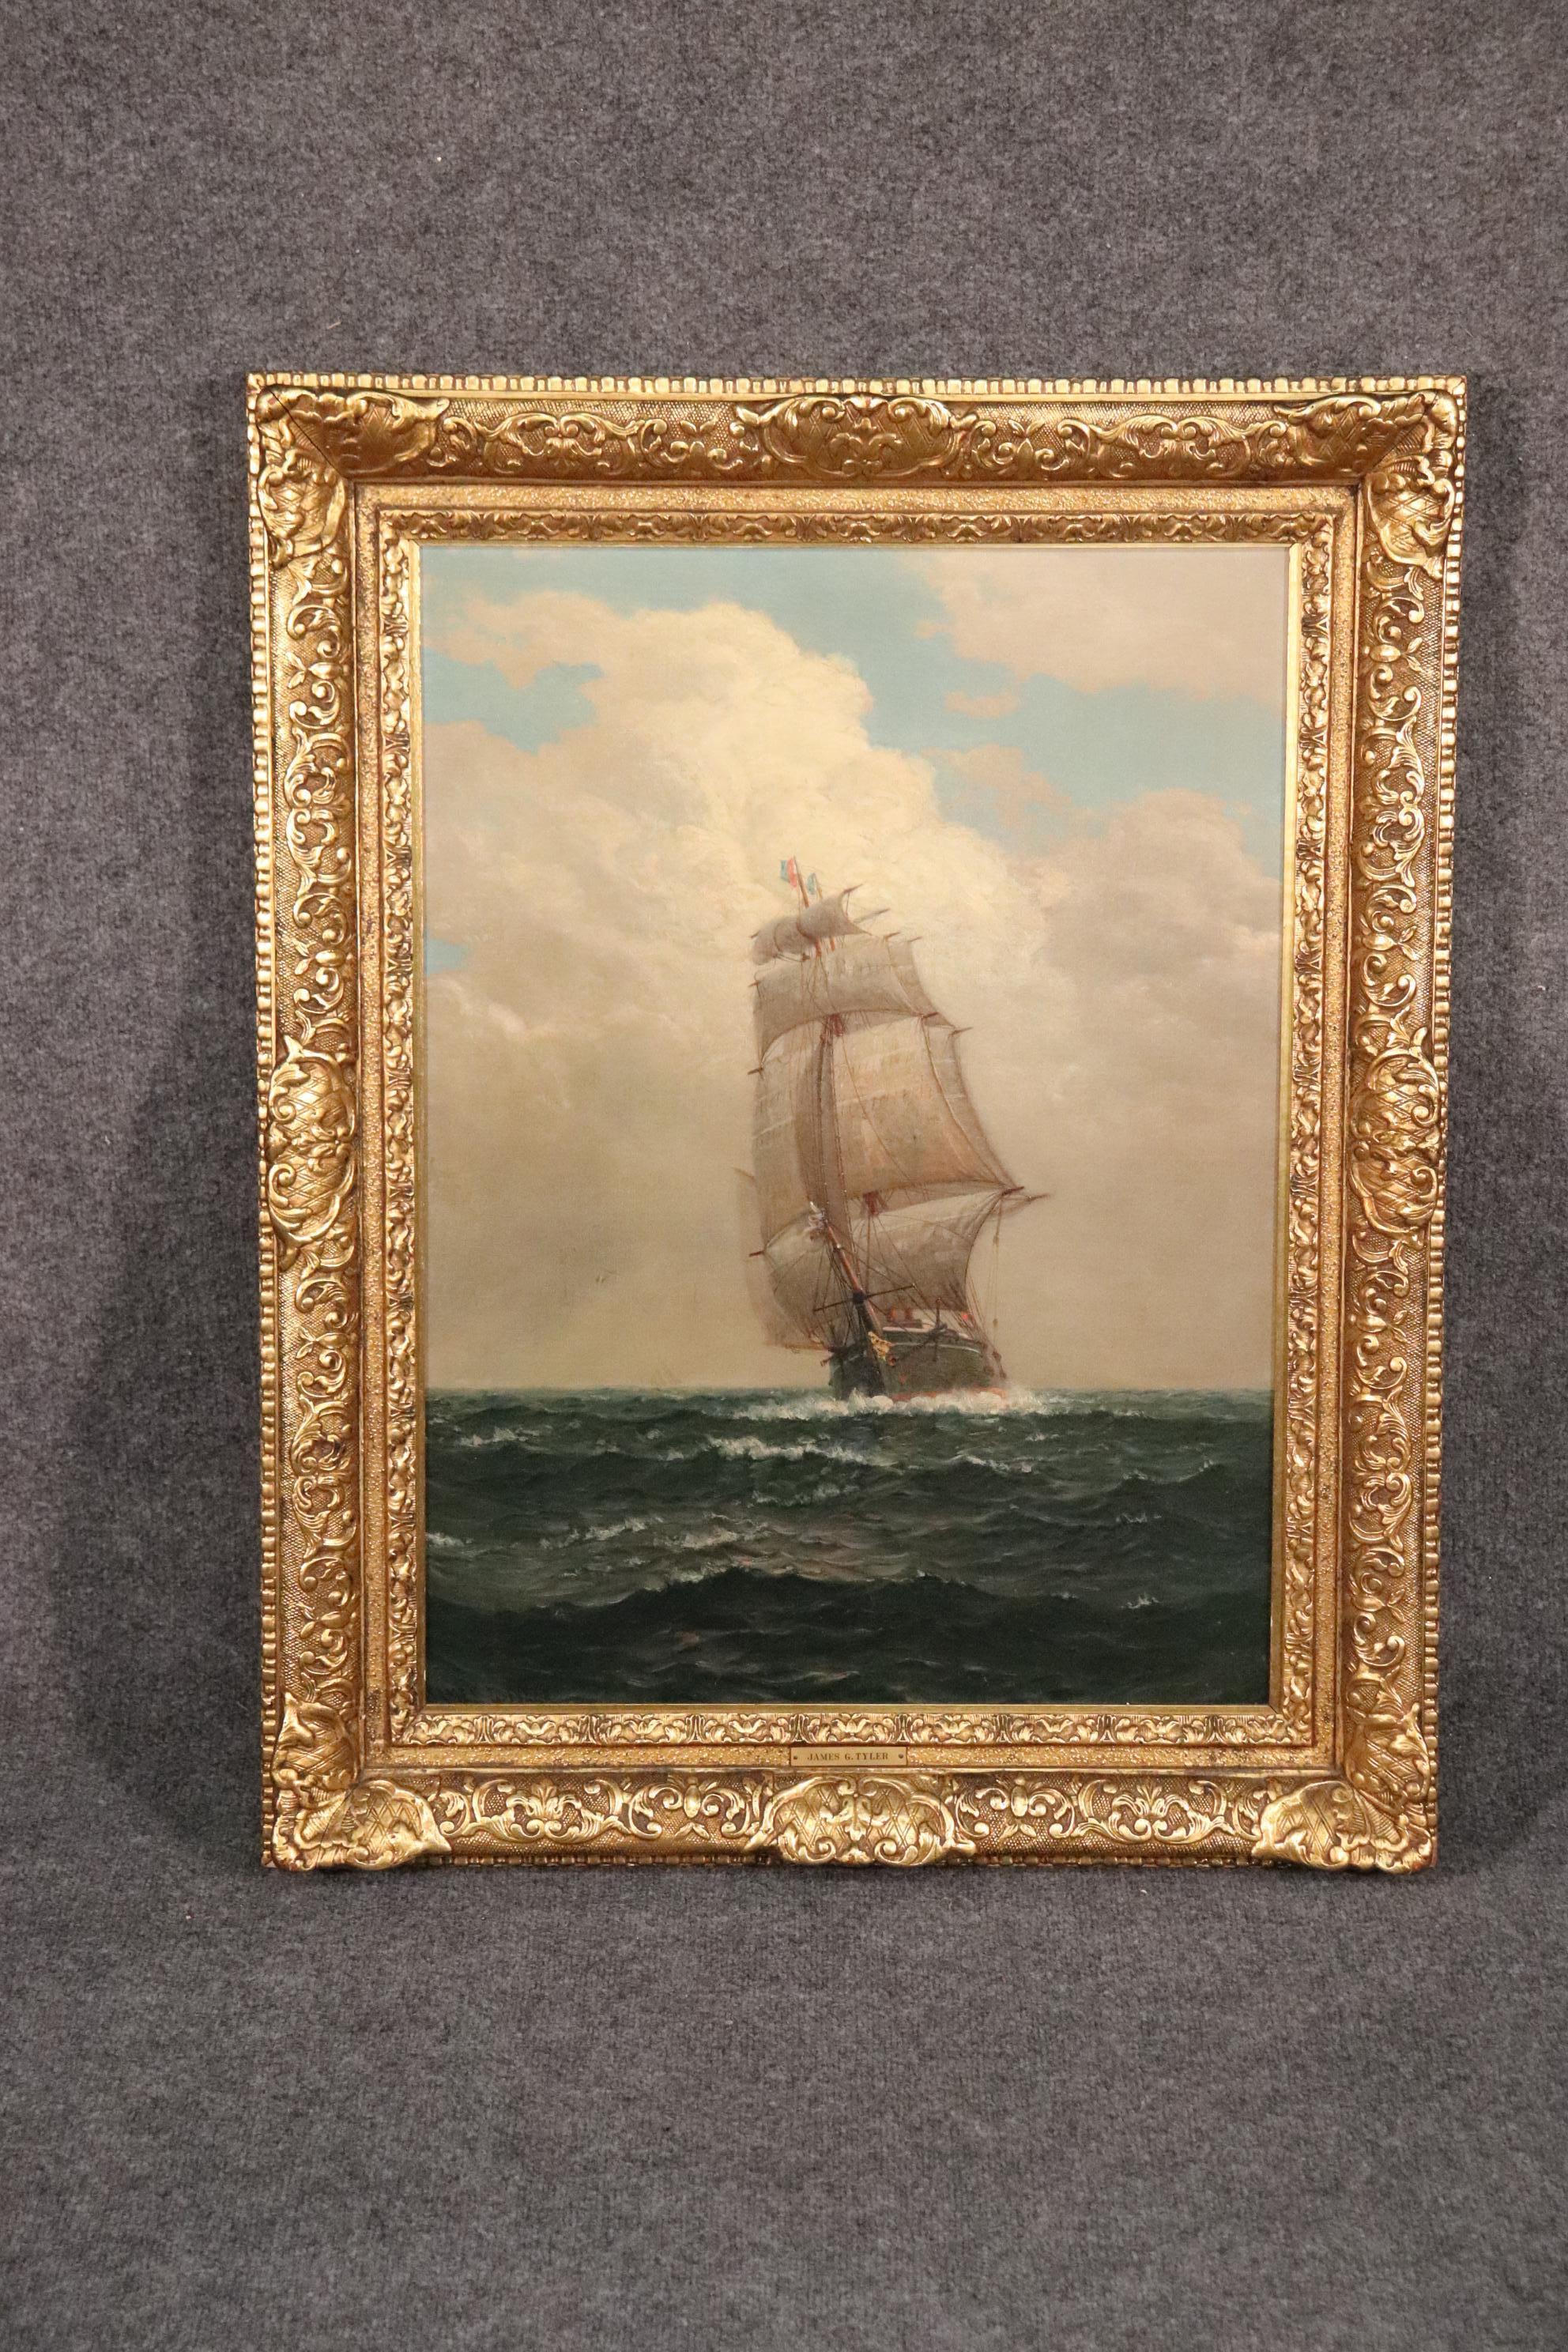 Dies ist eine hervorragende Qualität Gemälde eines großen Segelschiffs von James G. Tyler. Dieses Gemälde aus dem 19. Jahrhundert ist ein Meisterwerk des Künstlers und der Rahmen trägt ebenfalls zur Qualität des Gemäldes bei. Dies ist ein Gemälde